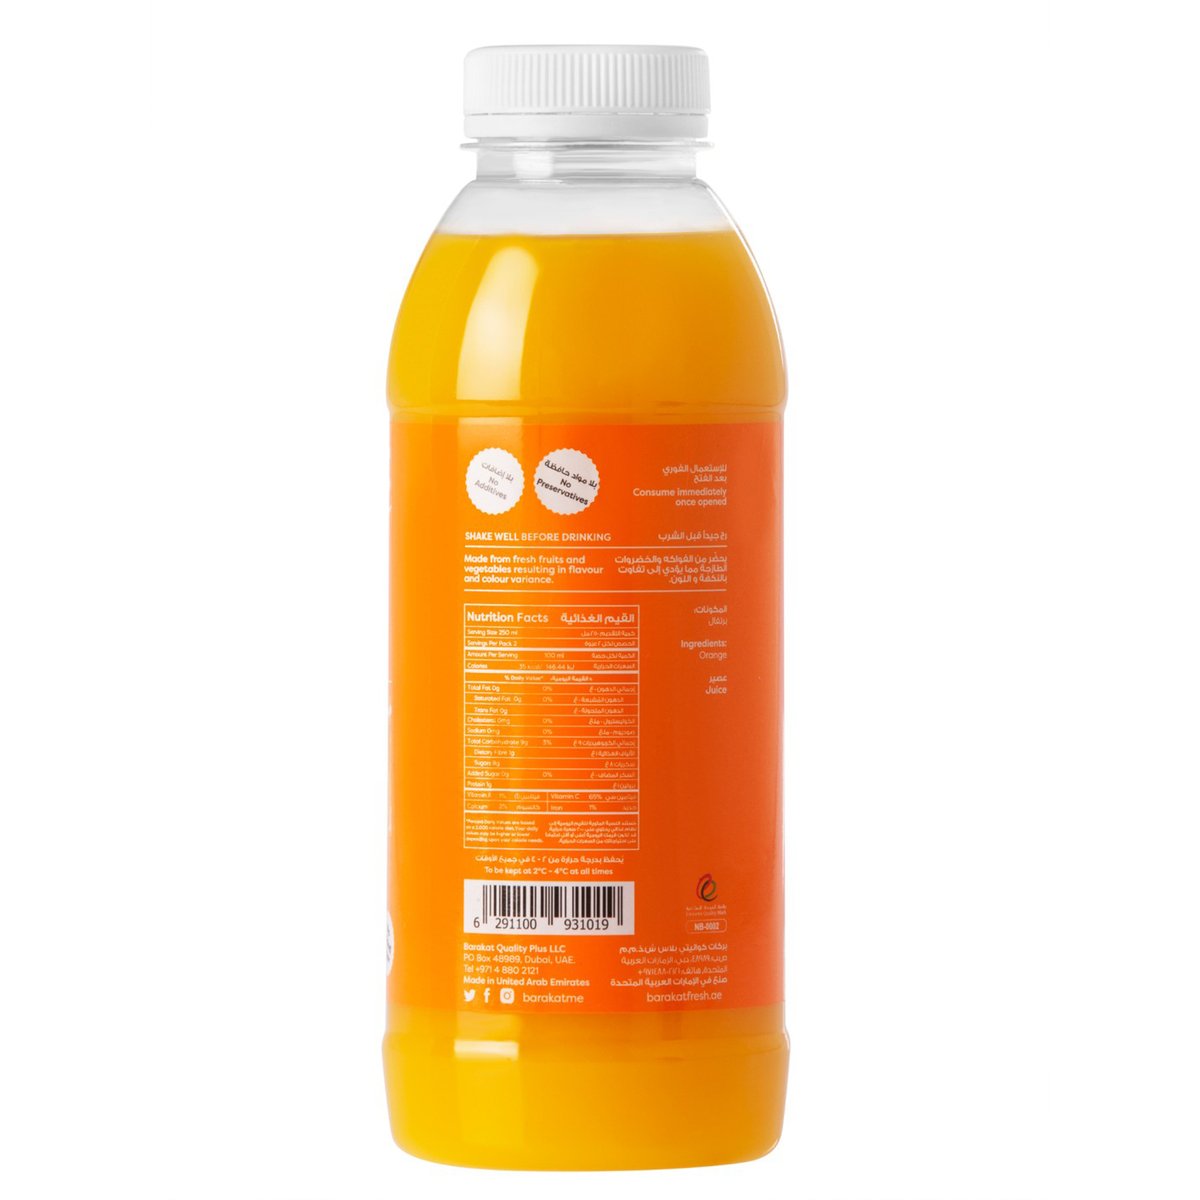 Barakat Fresh Squeezed Orange Juice 500 ml